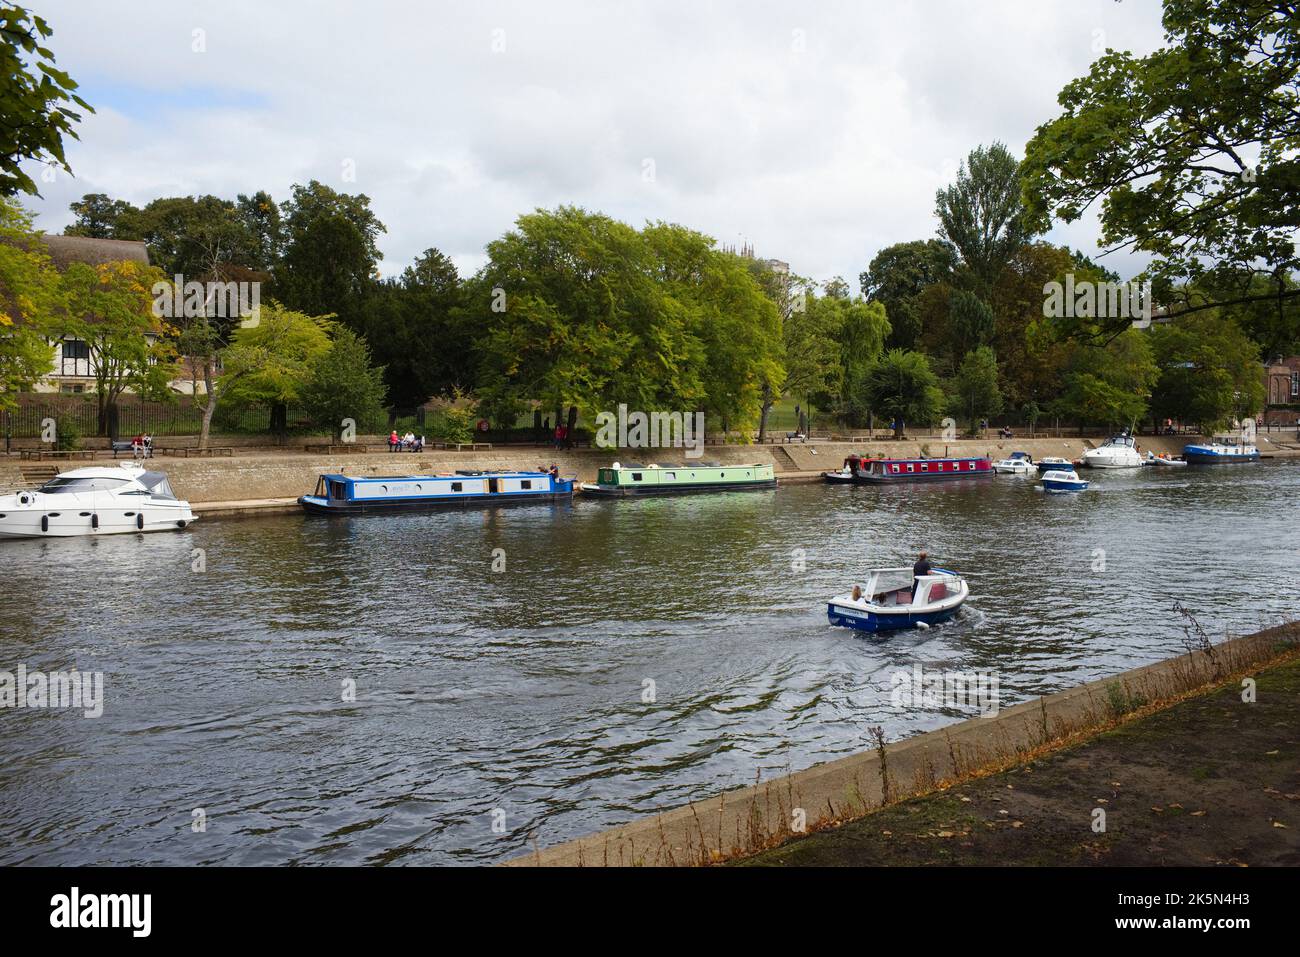 Ein kleines Tagesboot fährt an festfahrenden Schmalbooten auf dem Fluss Ouse in York vorbei Stockfoto